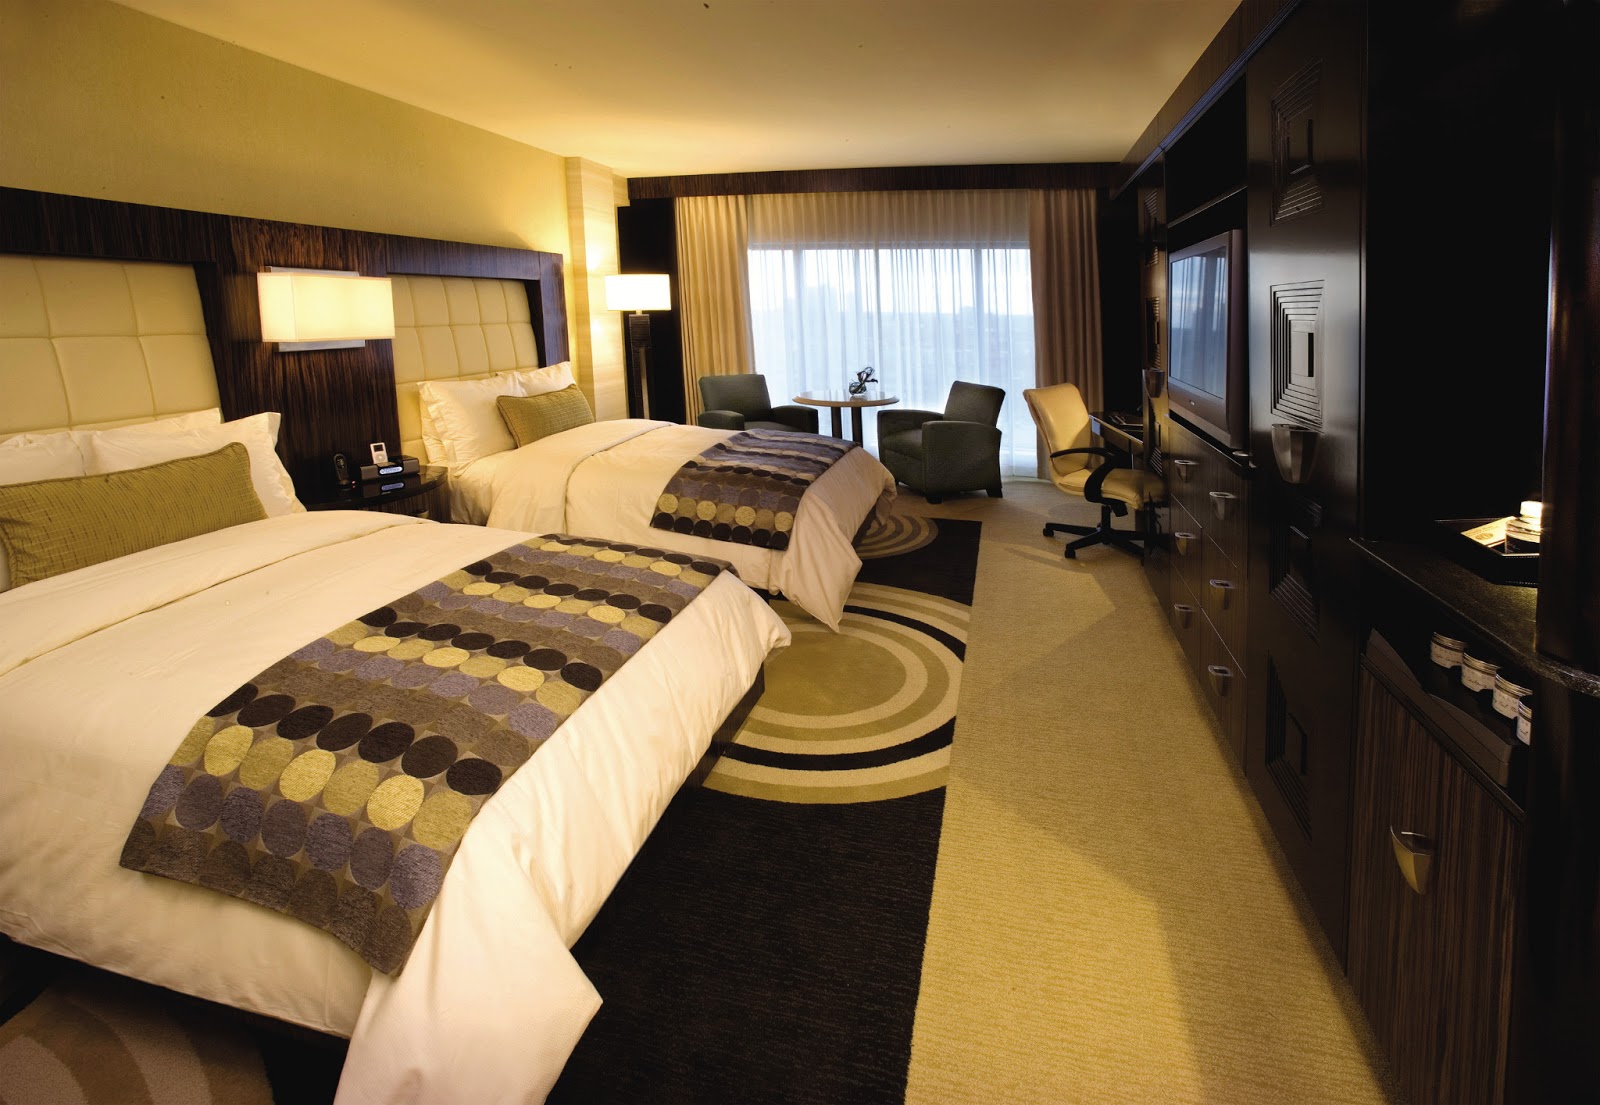 star+hotel+room+interior.jpg